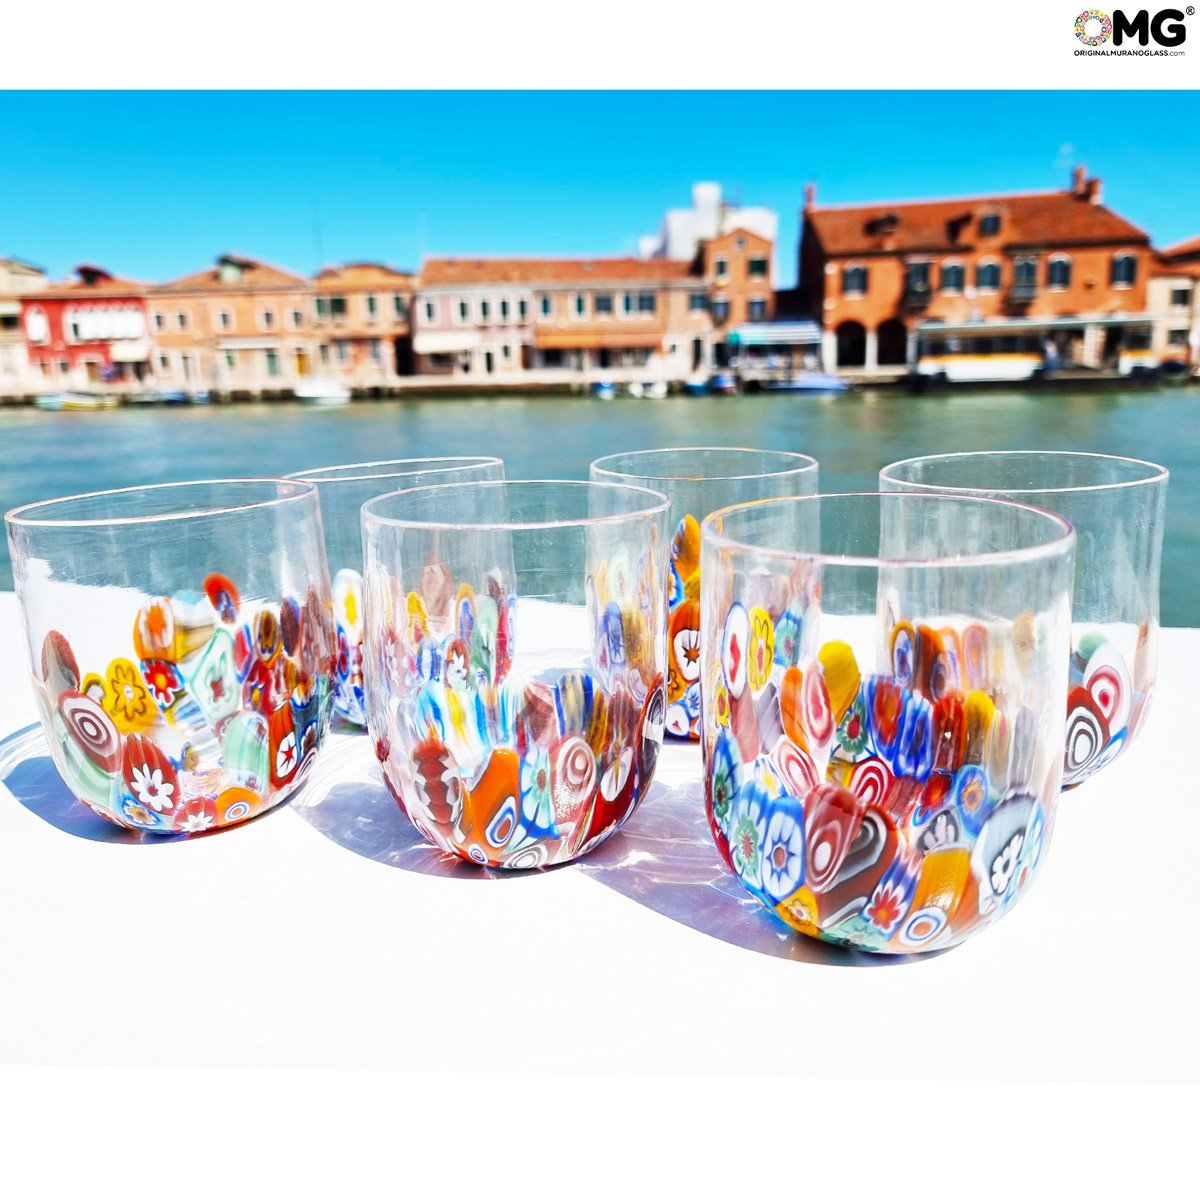 https://www.originalmuranoglass.com/images/stories/virtuemart/product/pitcher_big_murrina_original_murano_glass_venetian_omg_italy13.jpg